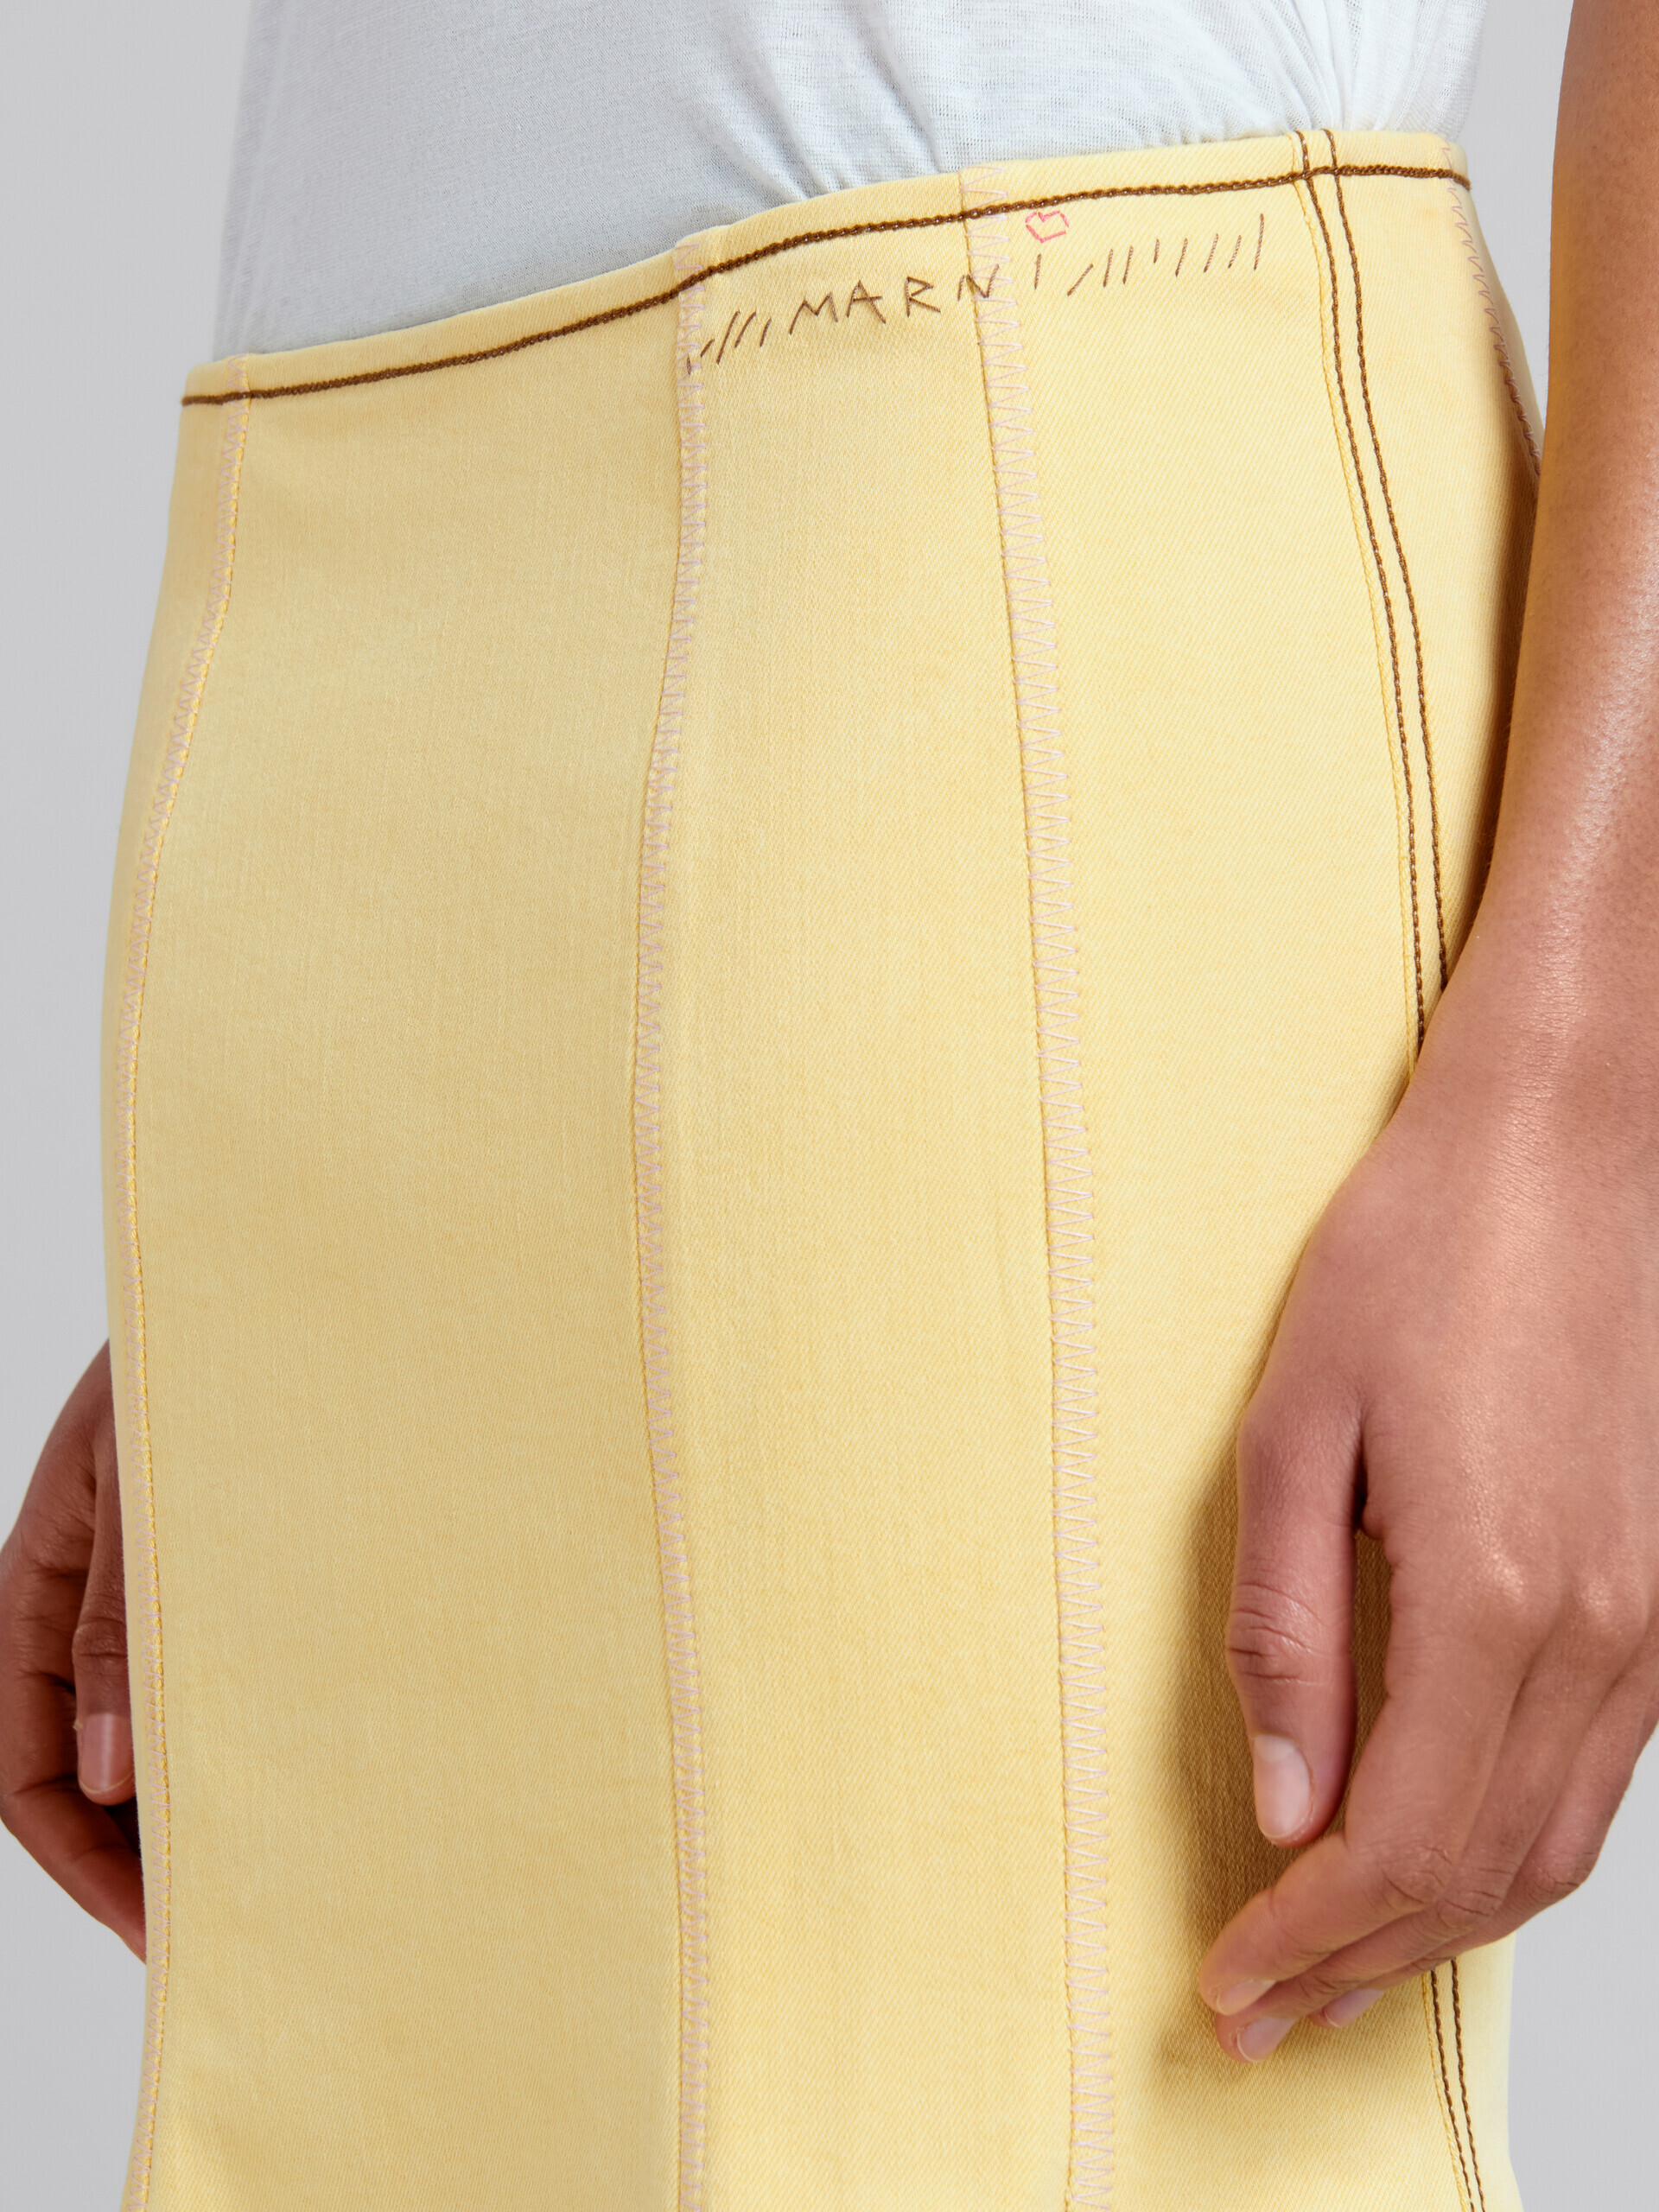 Falda de corte sirena en tejido vaquero orgánico amarillo con costuras en contraste - Faldas - Image 4